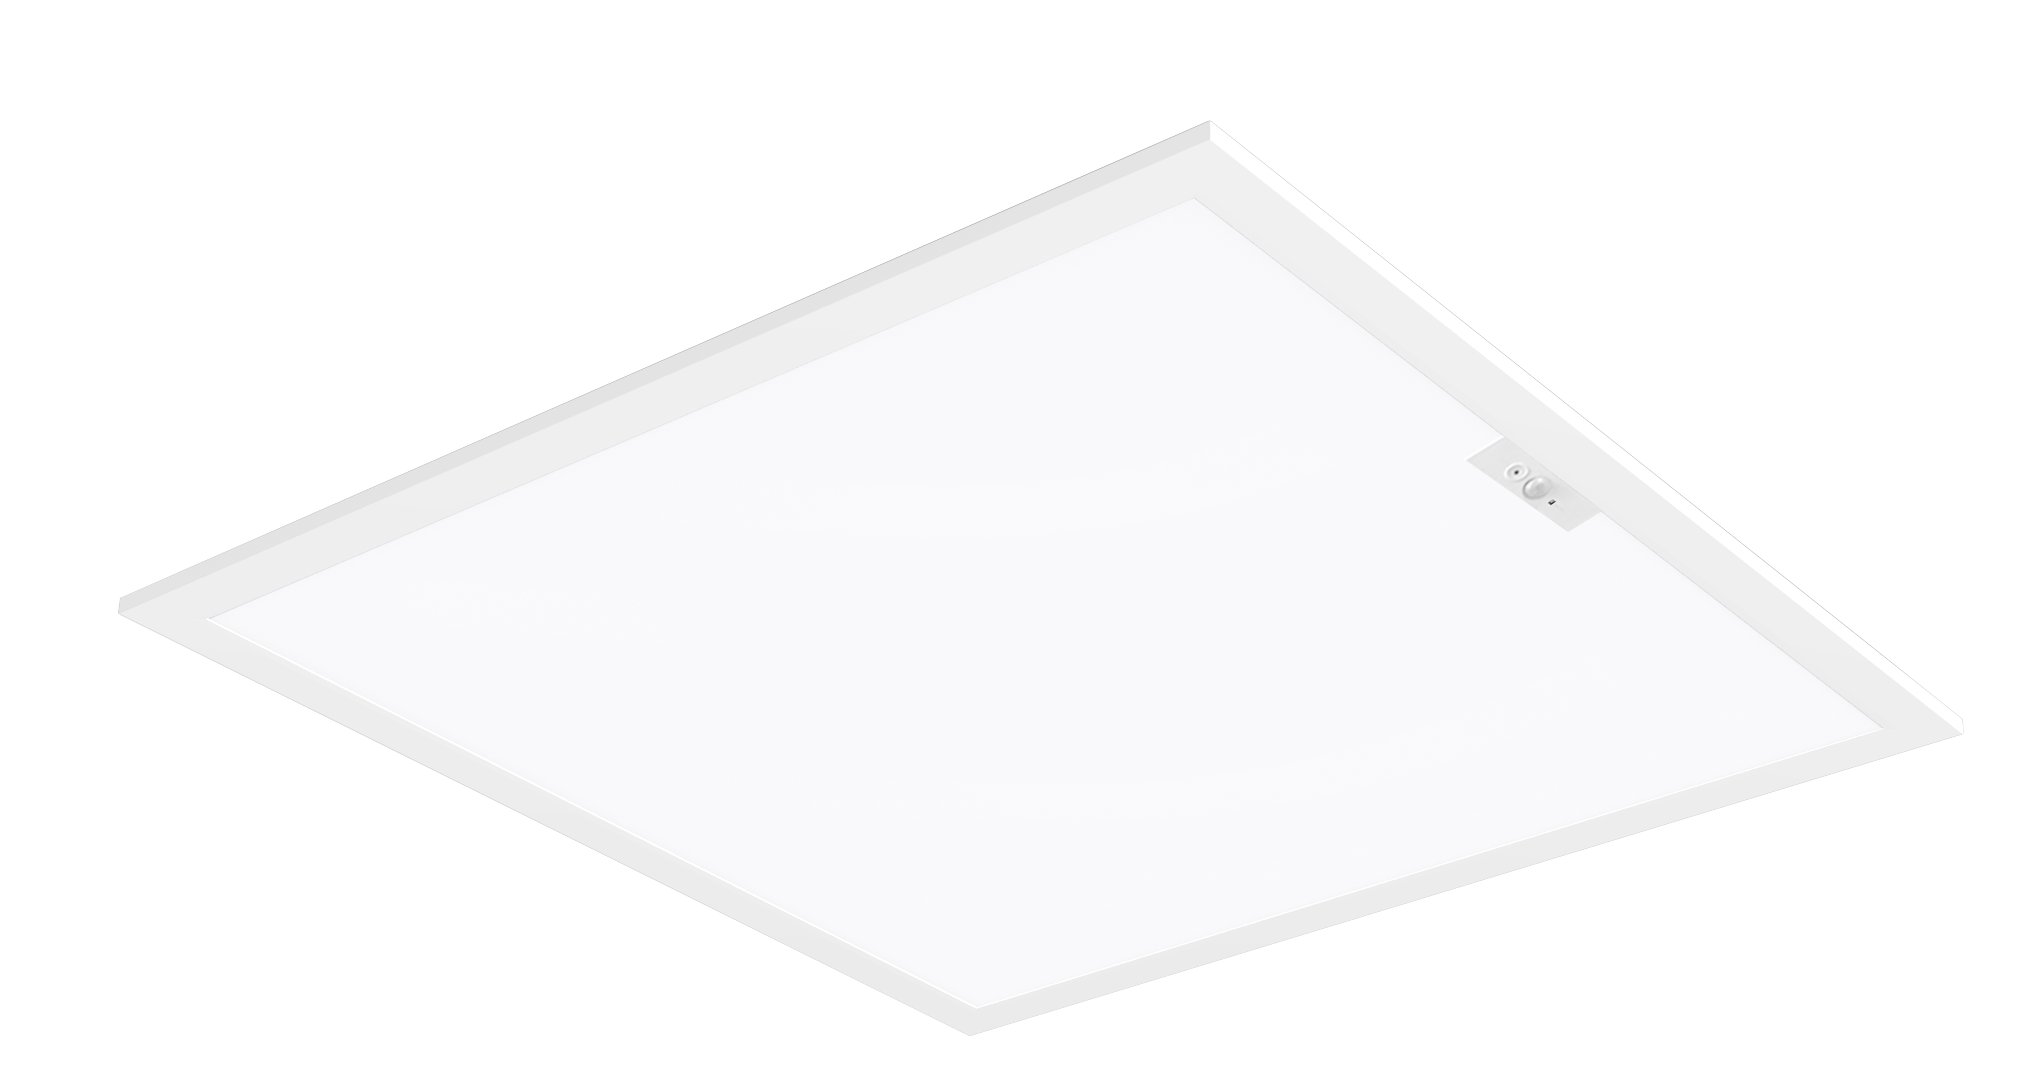 Smart Back-lit LED Panel Light 2 by 2